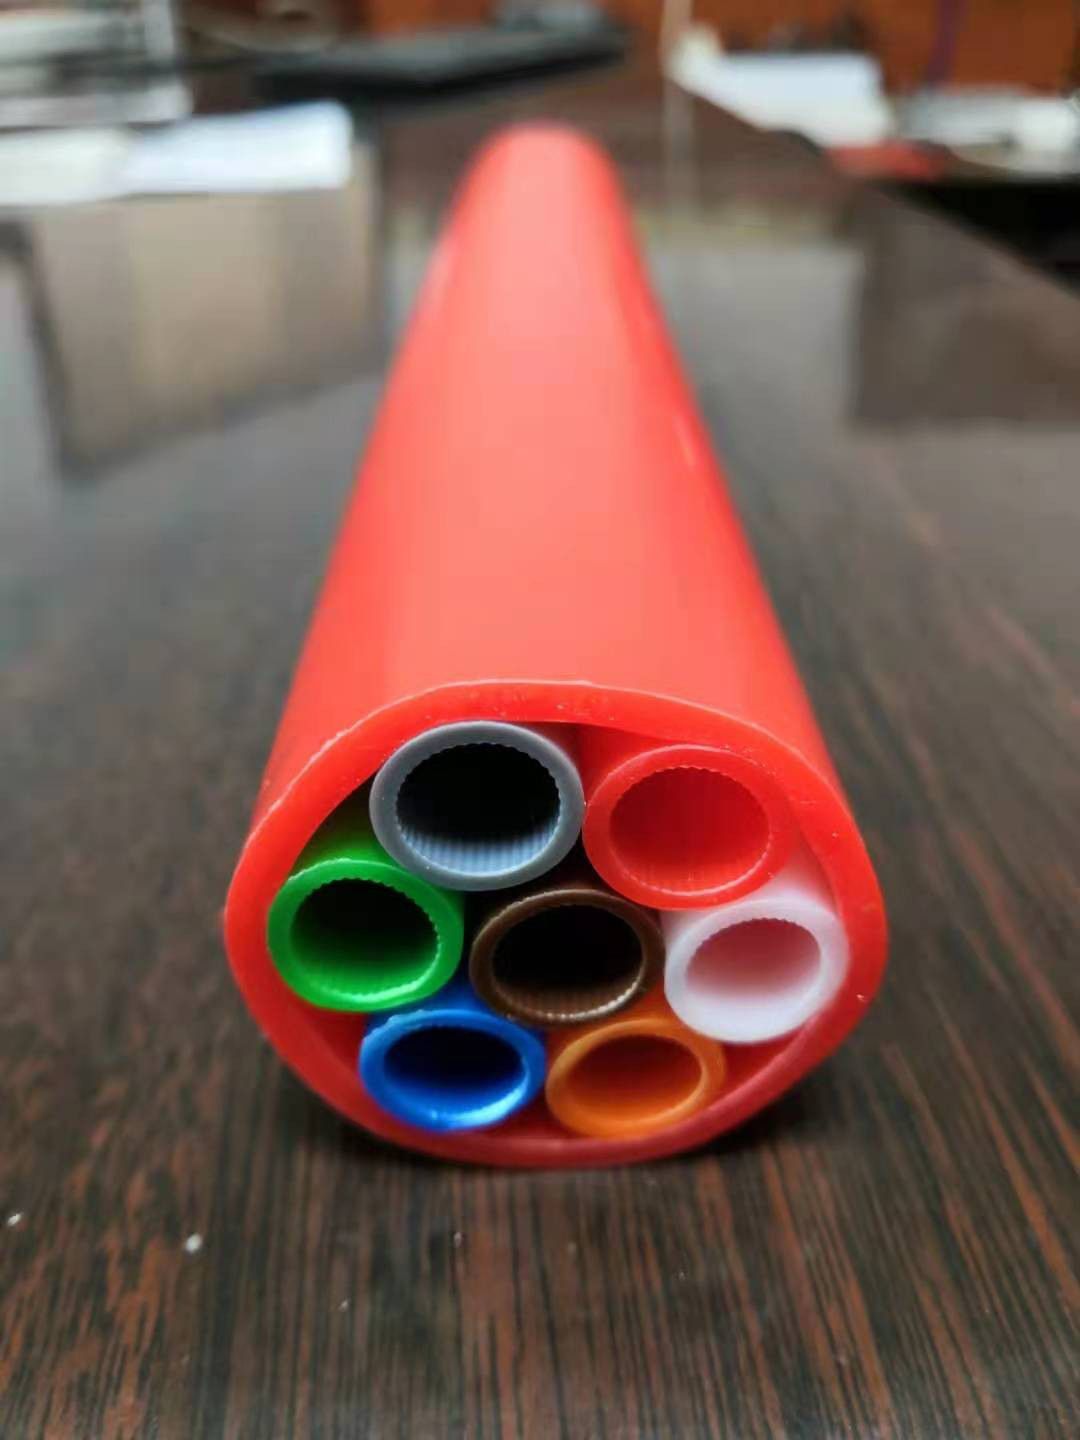 漯河市2016标准预应力塑料波纹管终端需求尚未启动